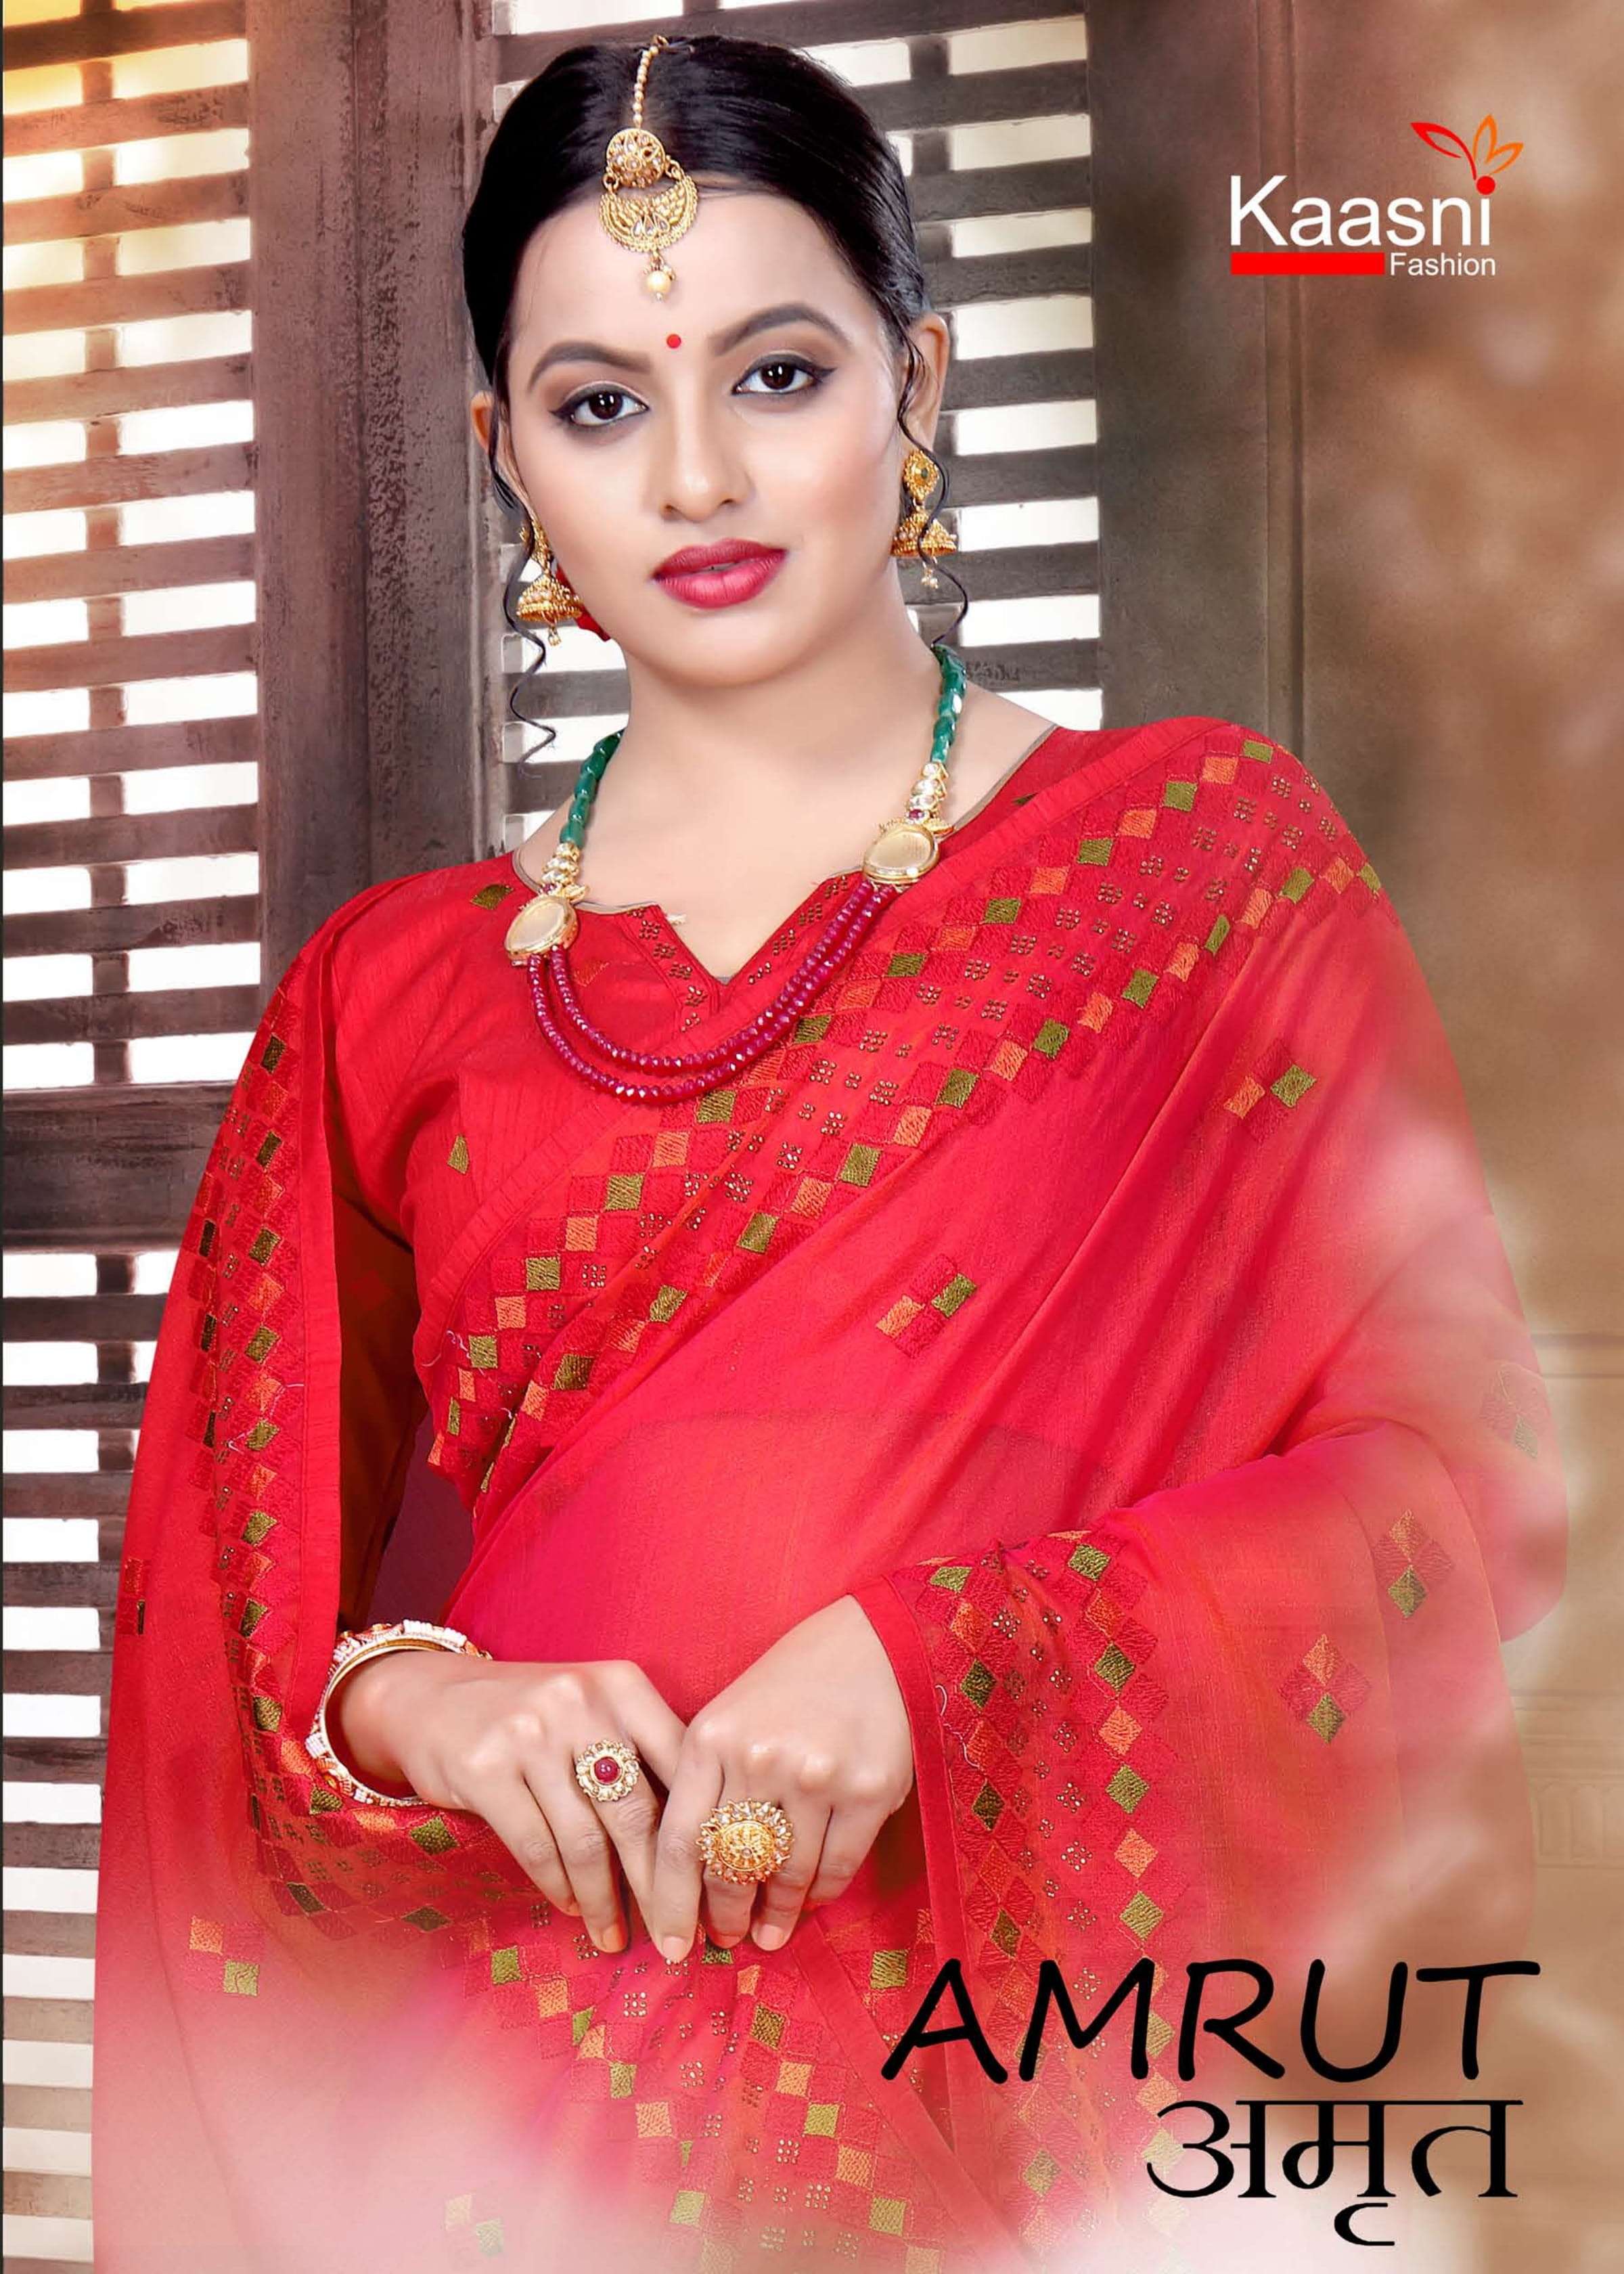 Amrut By Kaasni Fashion Wedding Work Saris Exports